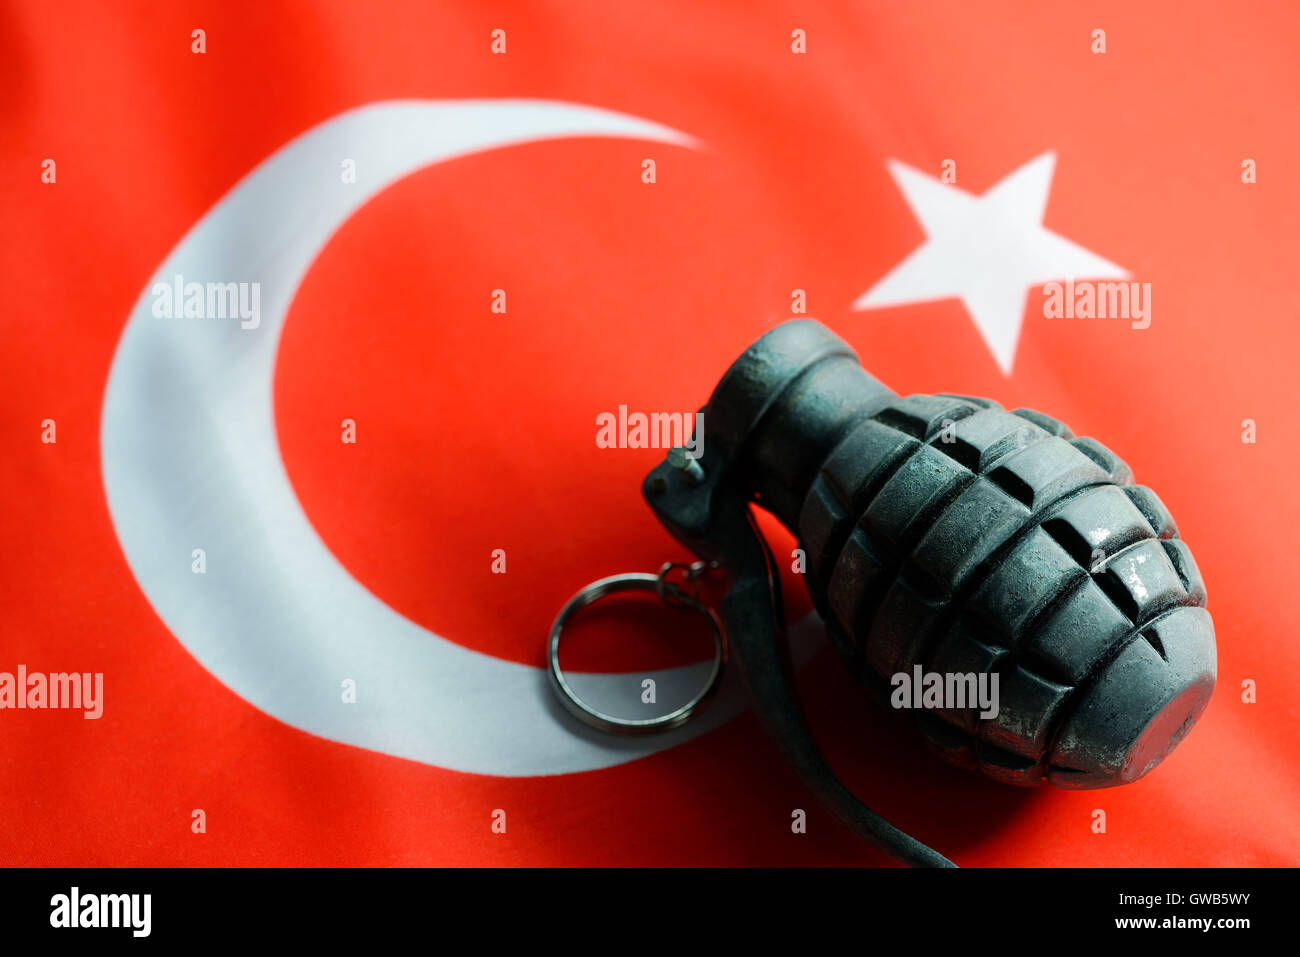 Granate auf türkische Flagge, symbolische Foto für den Vorwurf der Unterstützung von terroristischen Gruppierungen, Handgranate Auf Tuerkischer Fahn Stockfoto